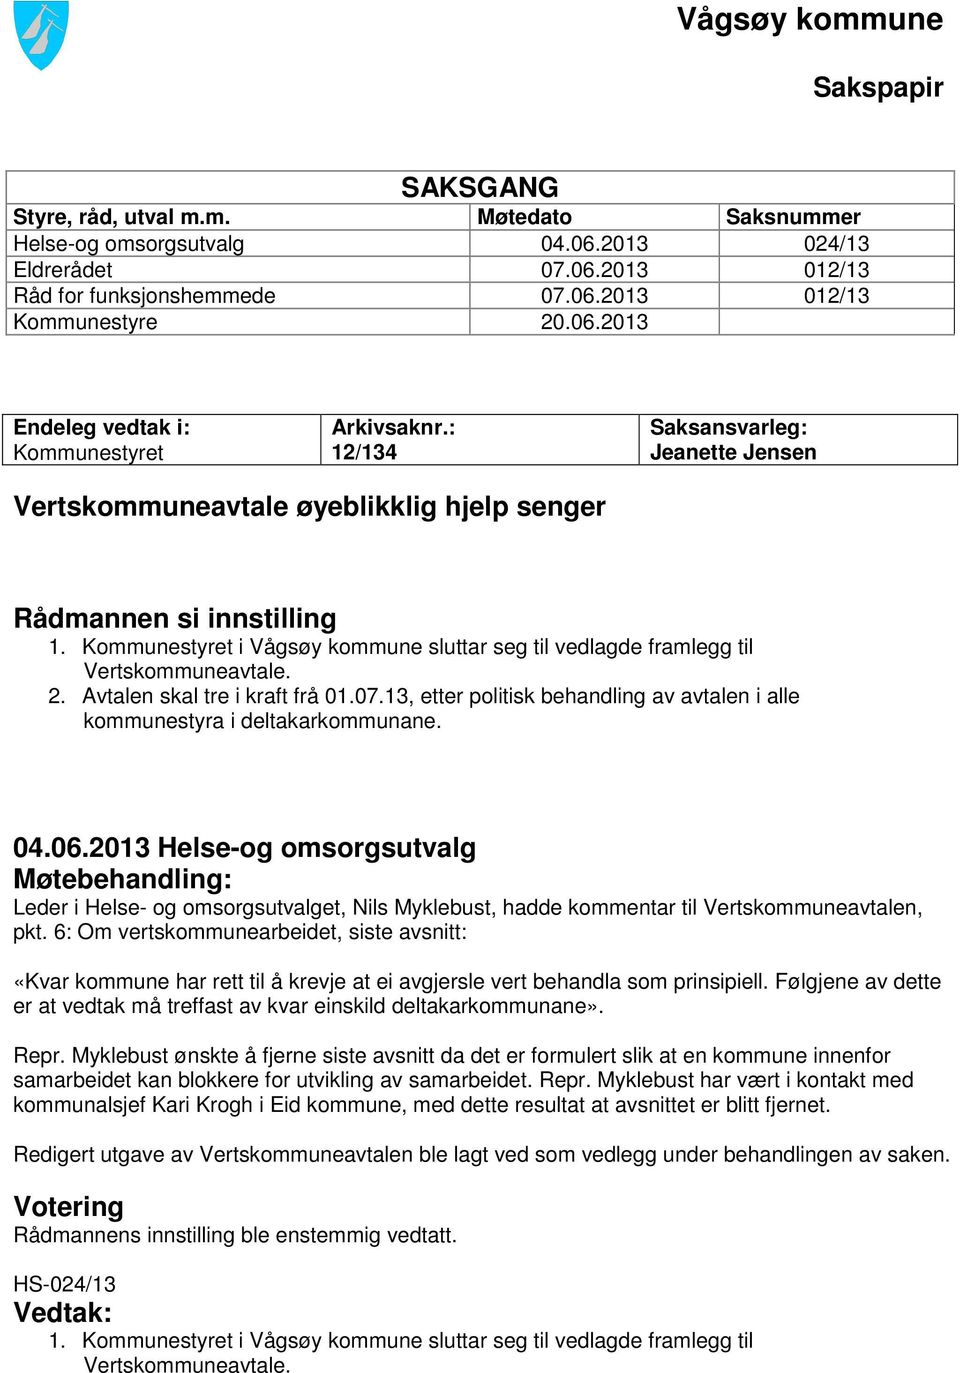 Kommunestyret i Vågsøy kommune sluttar seg til vedlagde framlegg til Vertskommuneavtale. 2. Avtalen skal tre i kraft frå 01.07.